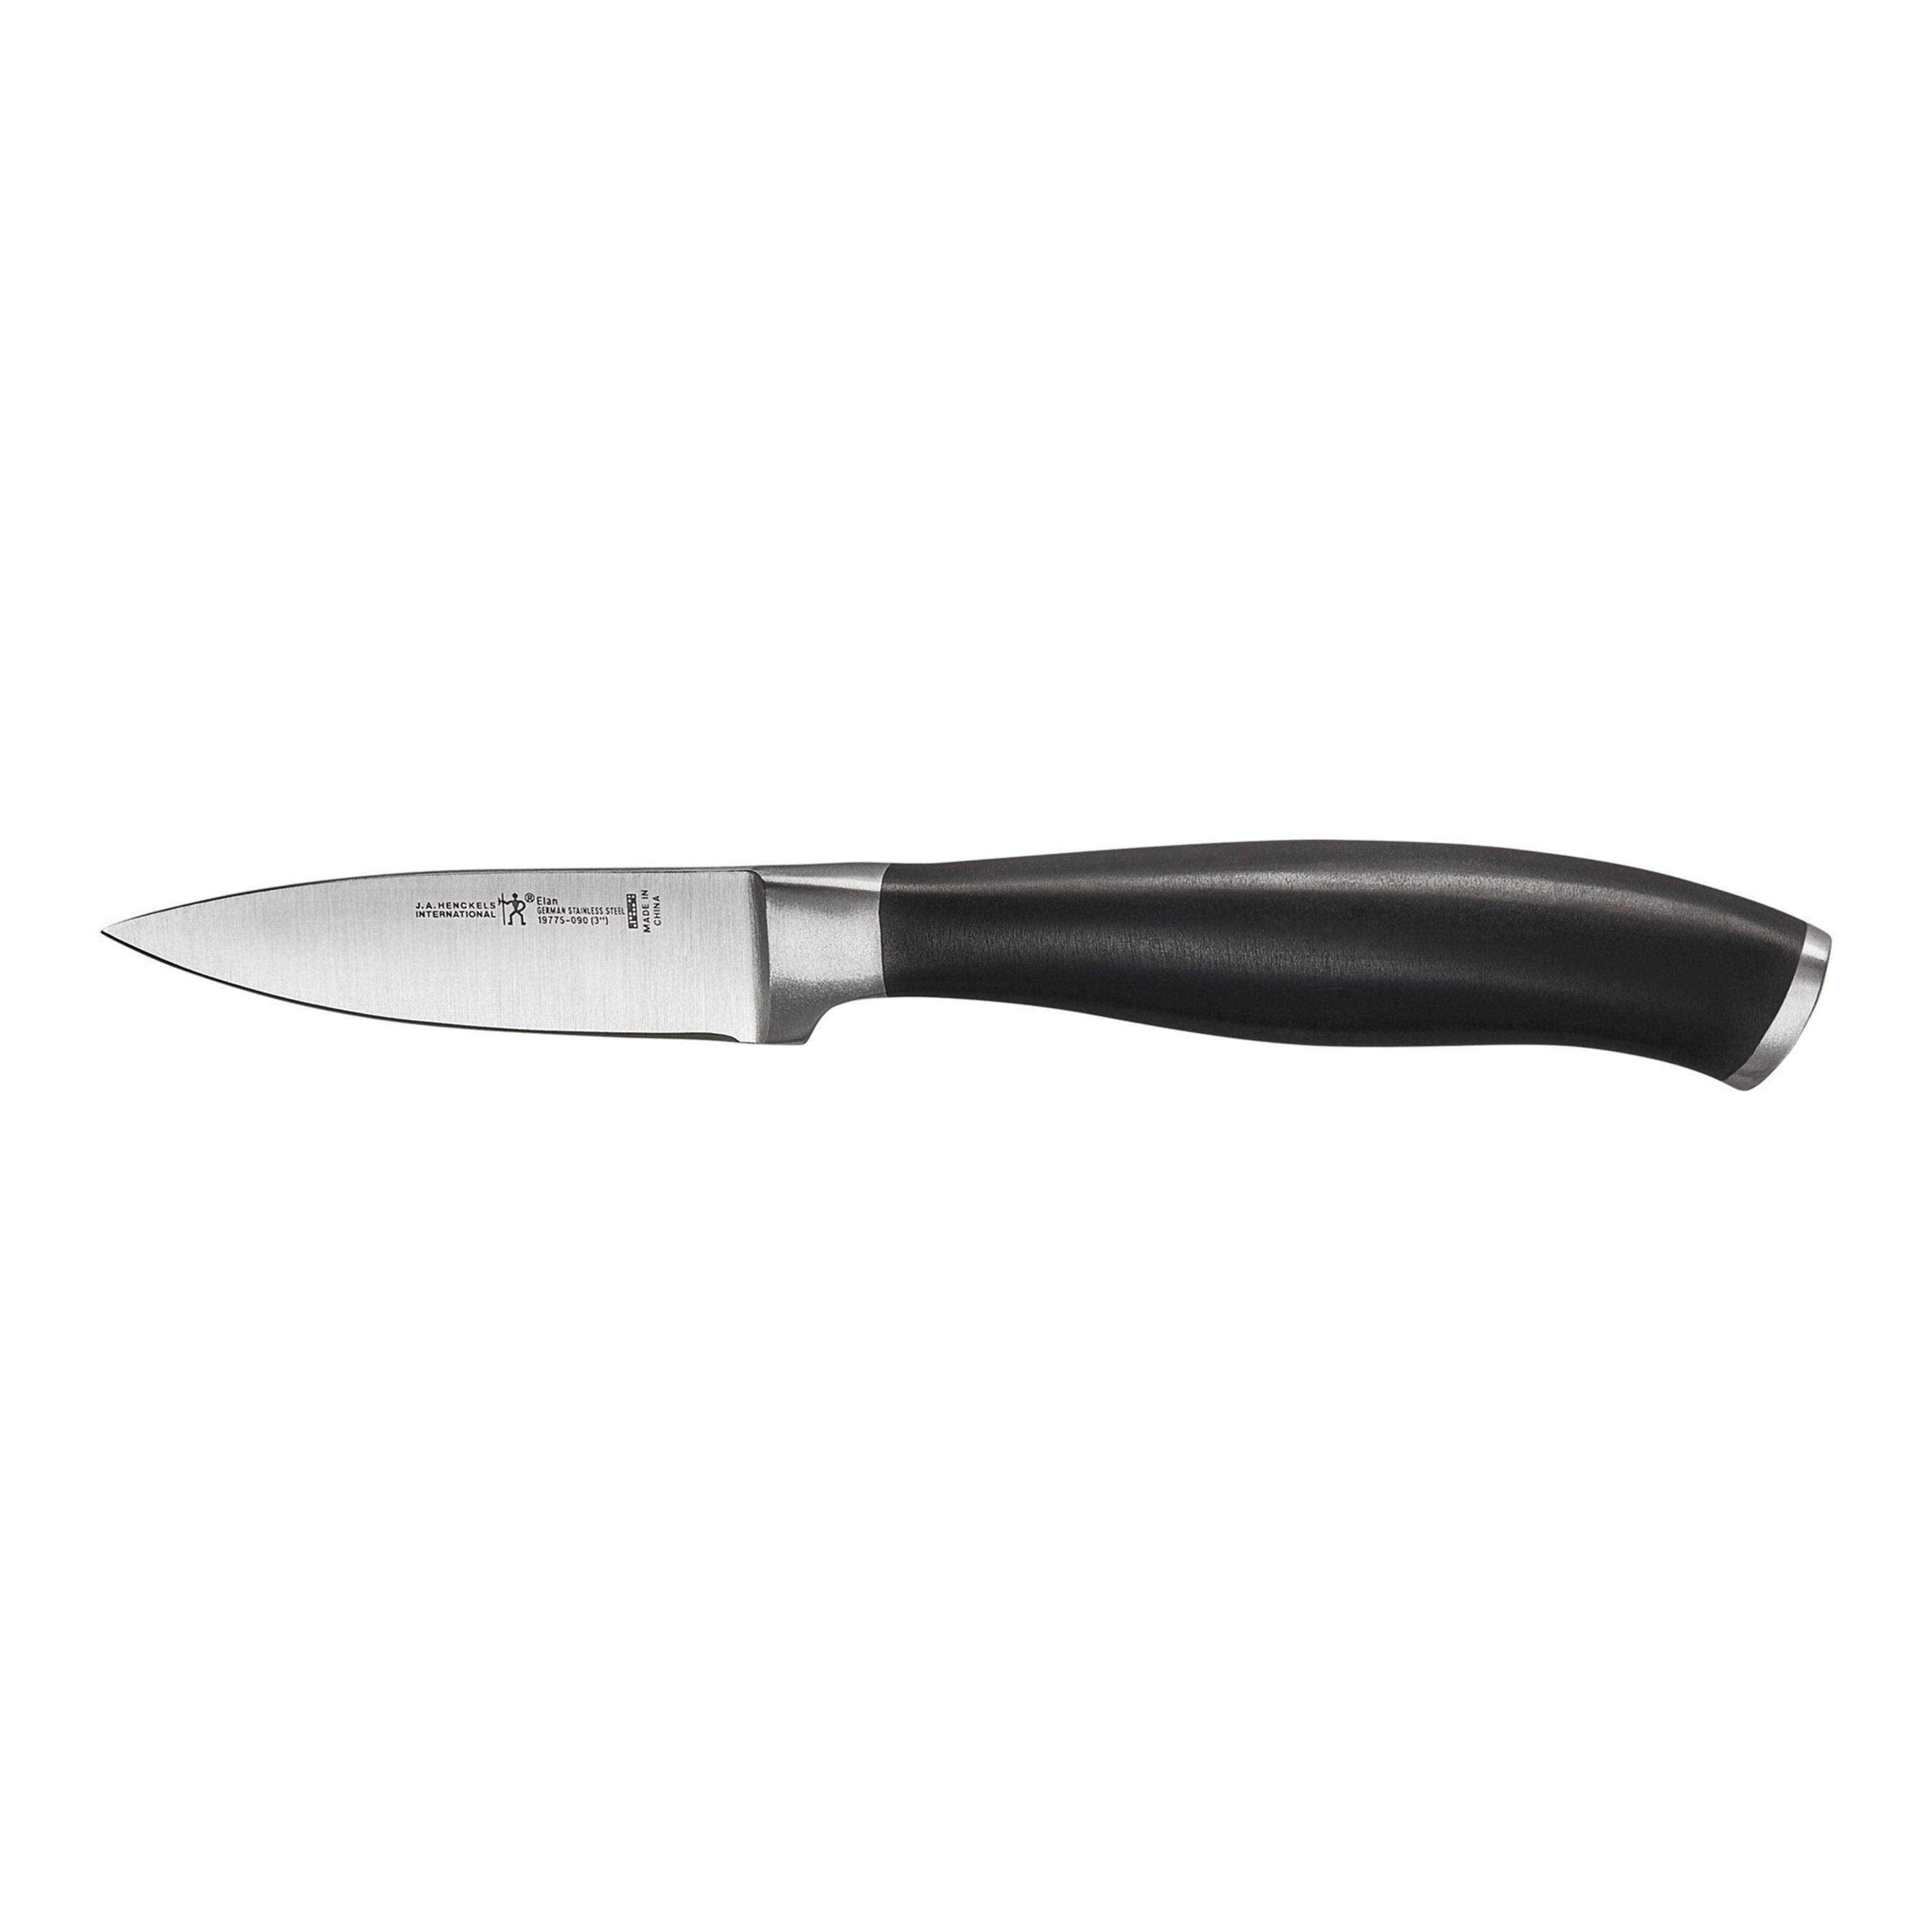 HENCKELS Elan 7-Pc Self-Sharpening Knife Block Set